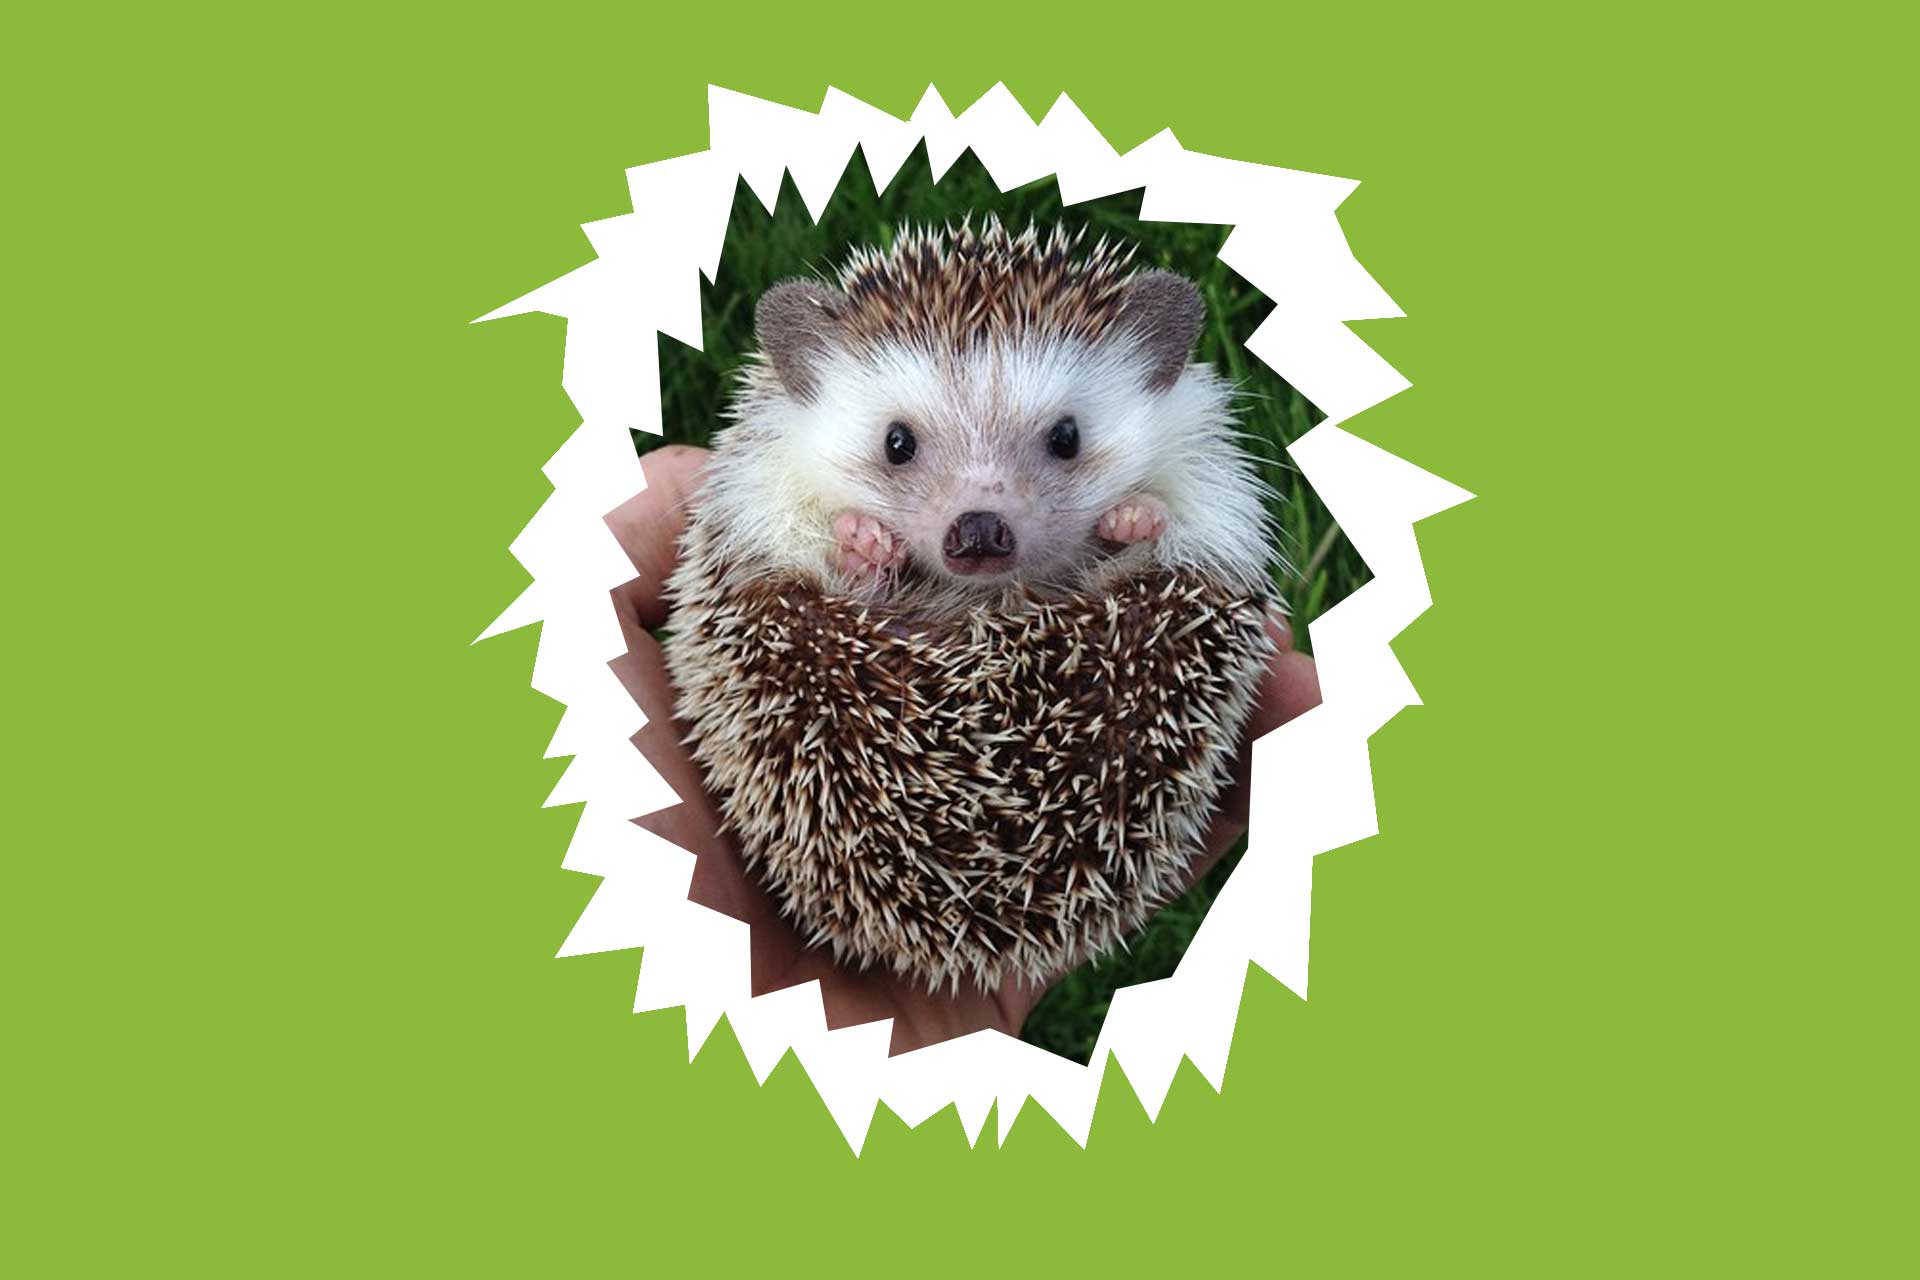 Biddy the hedgehog